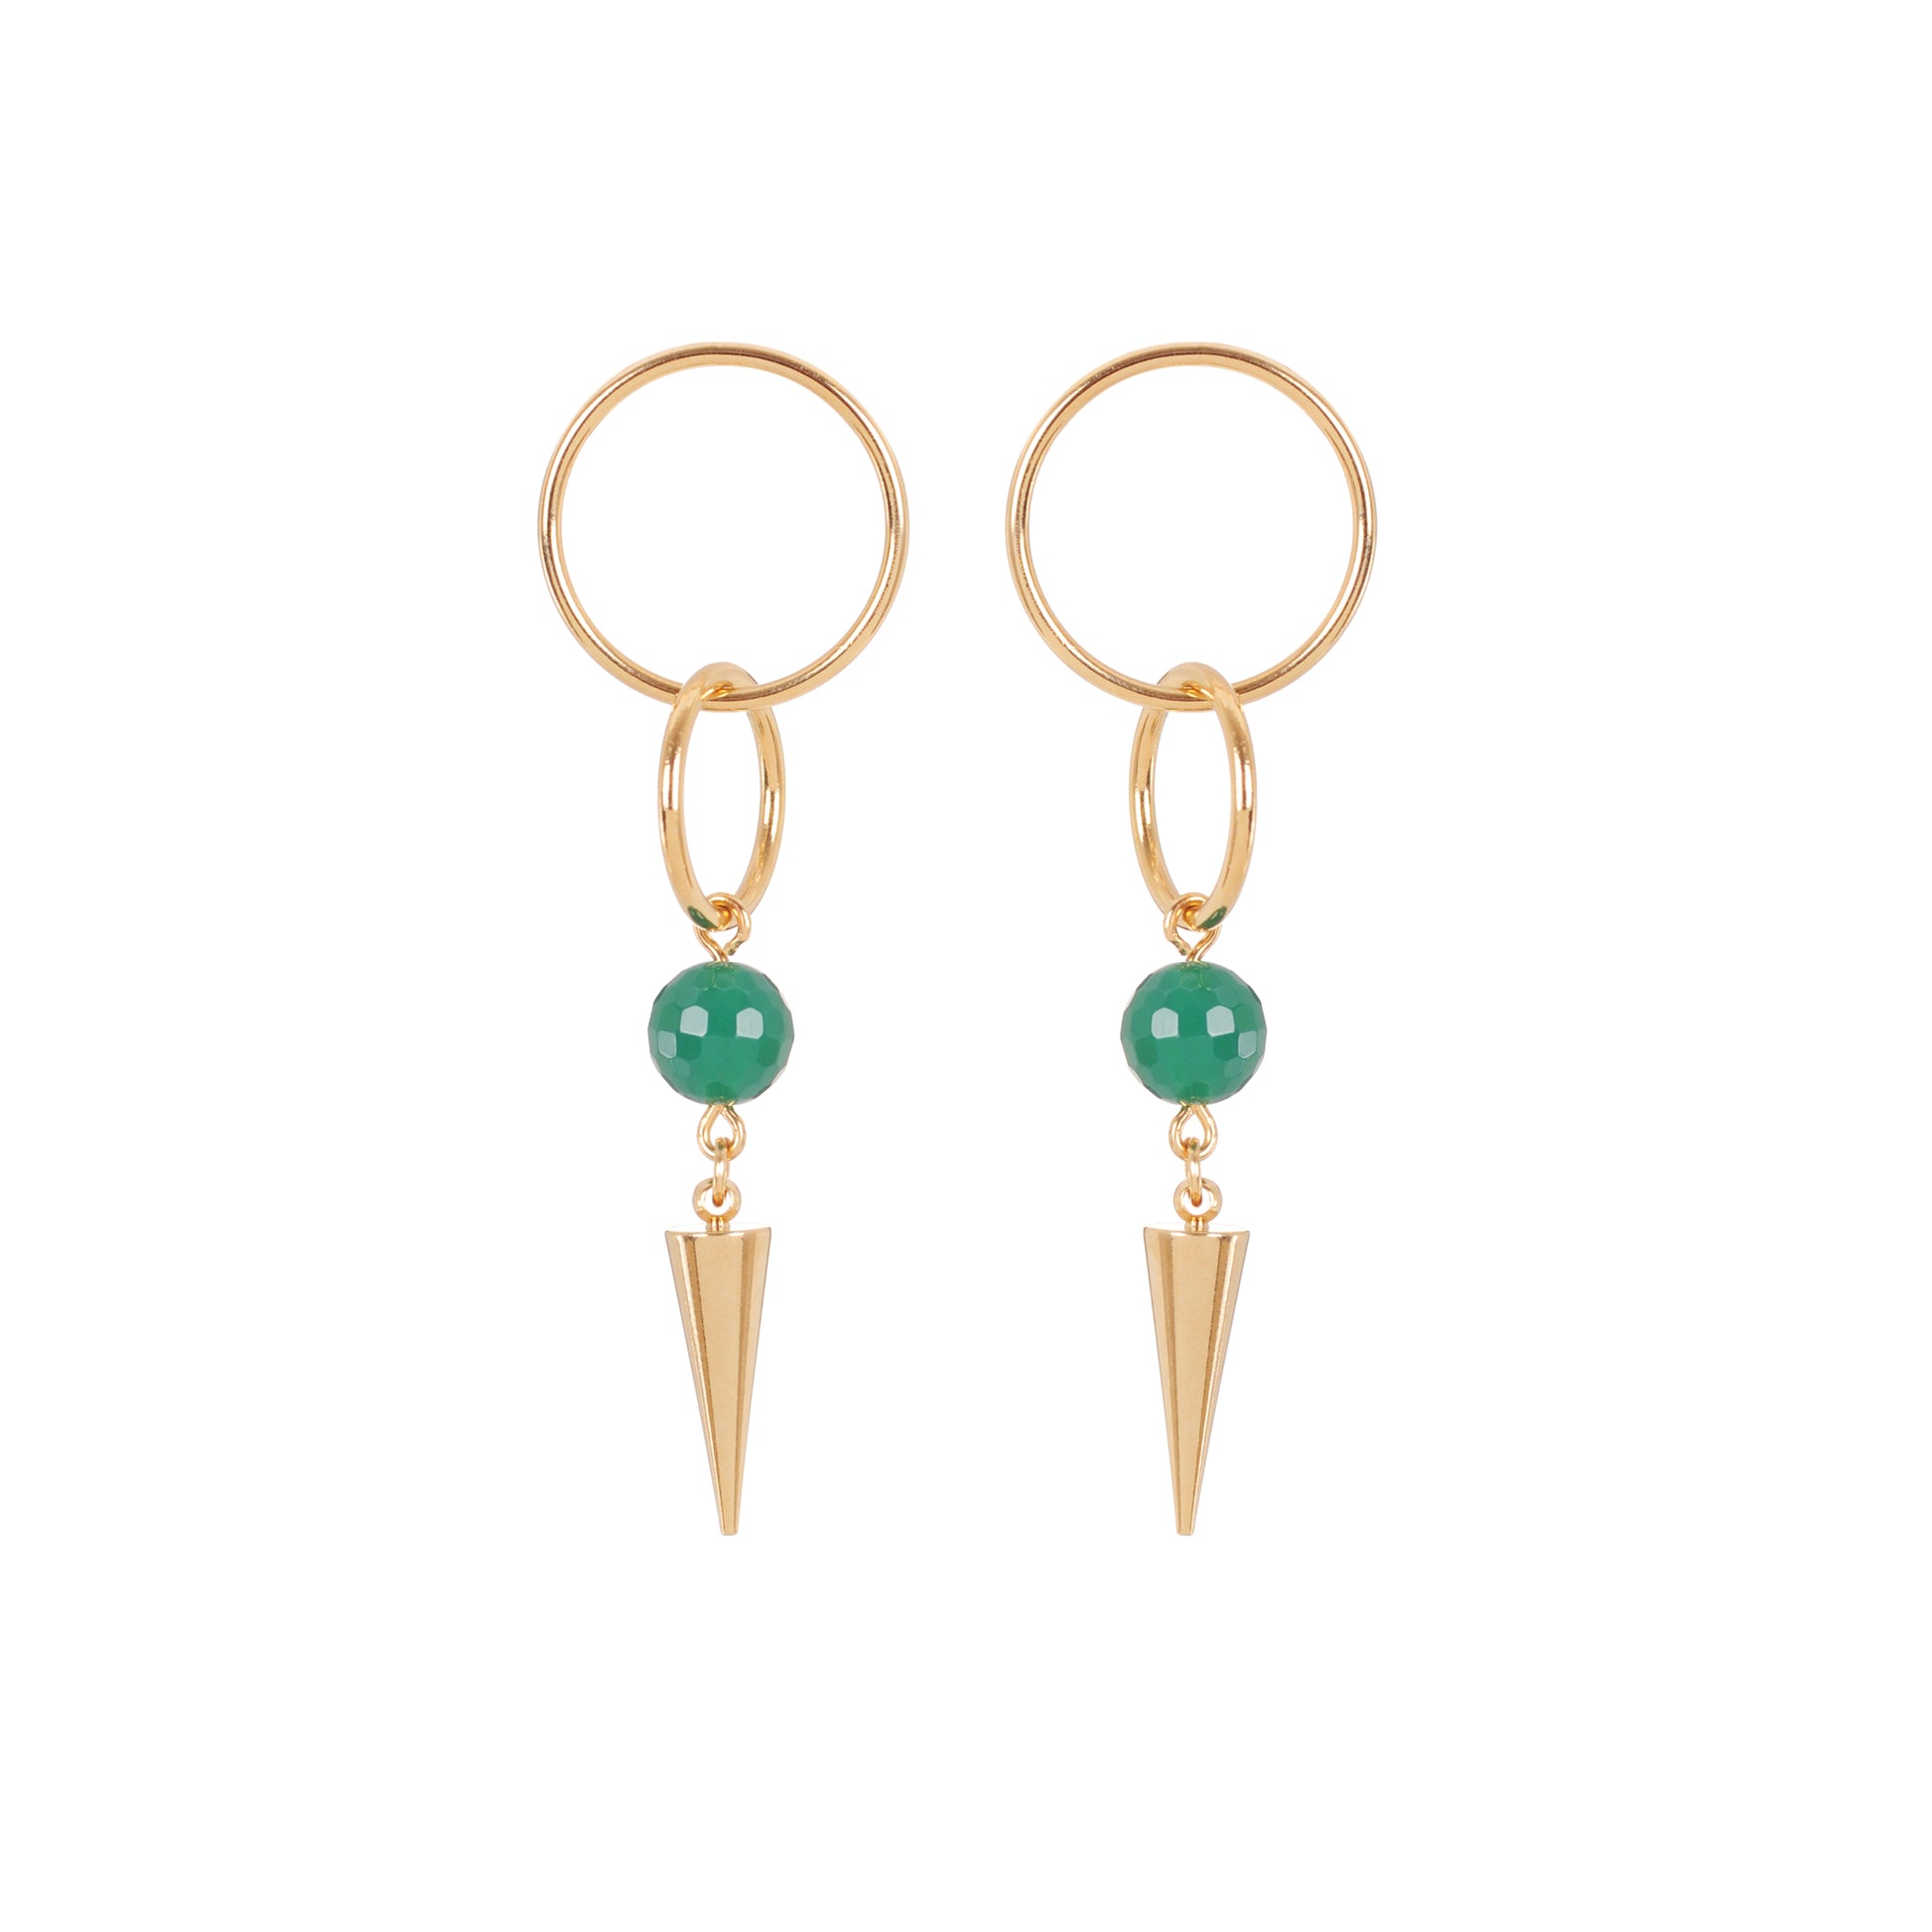 Boucles d'oreilles pendantes composées d'anneaux d'une bille en pierre vert et d'un pic pour un look glam rock